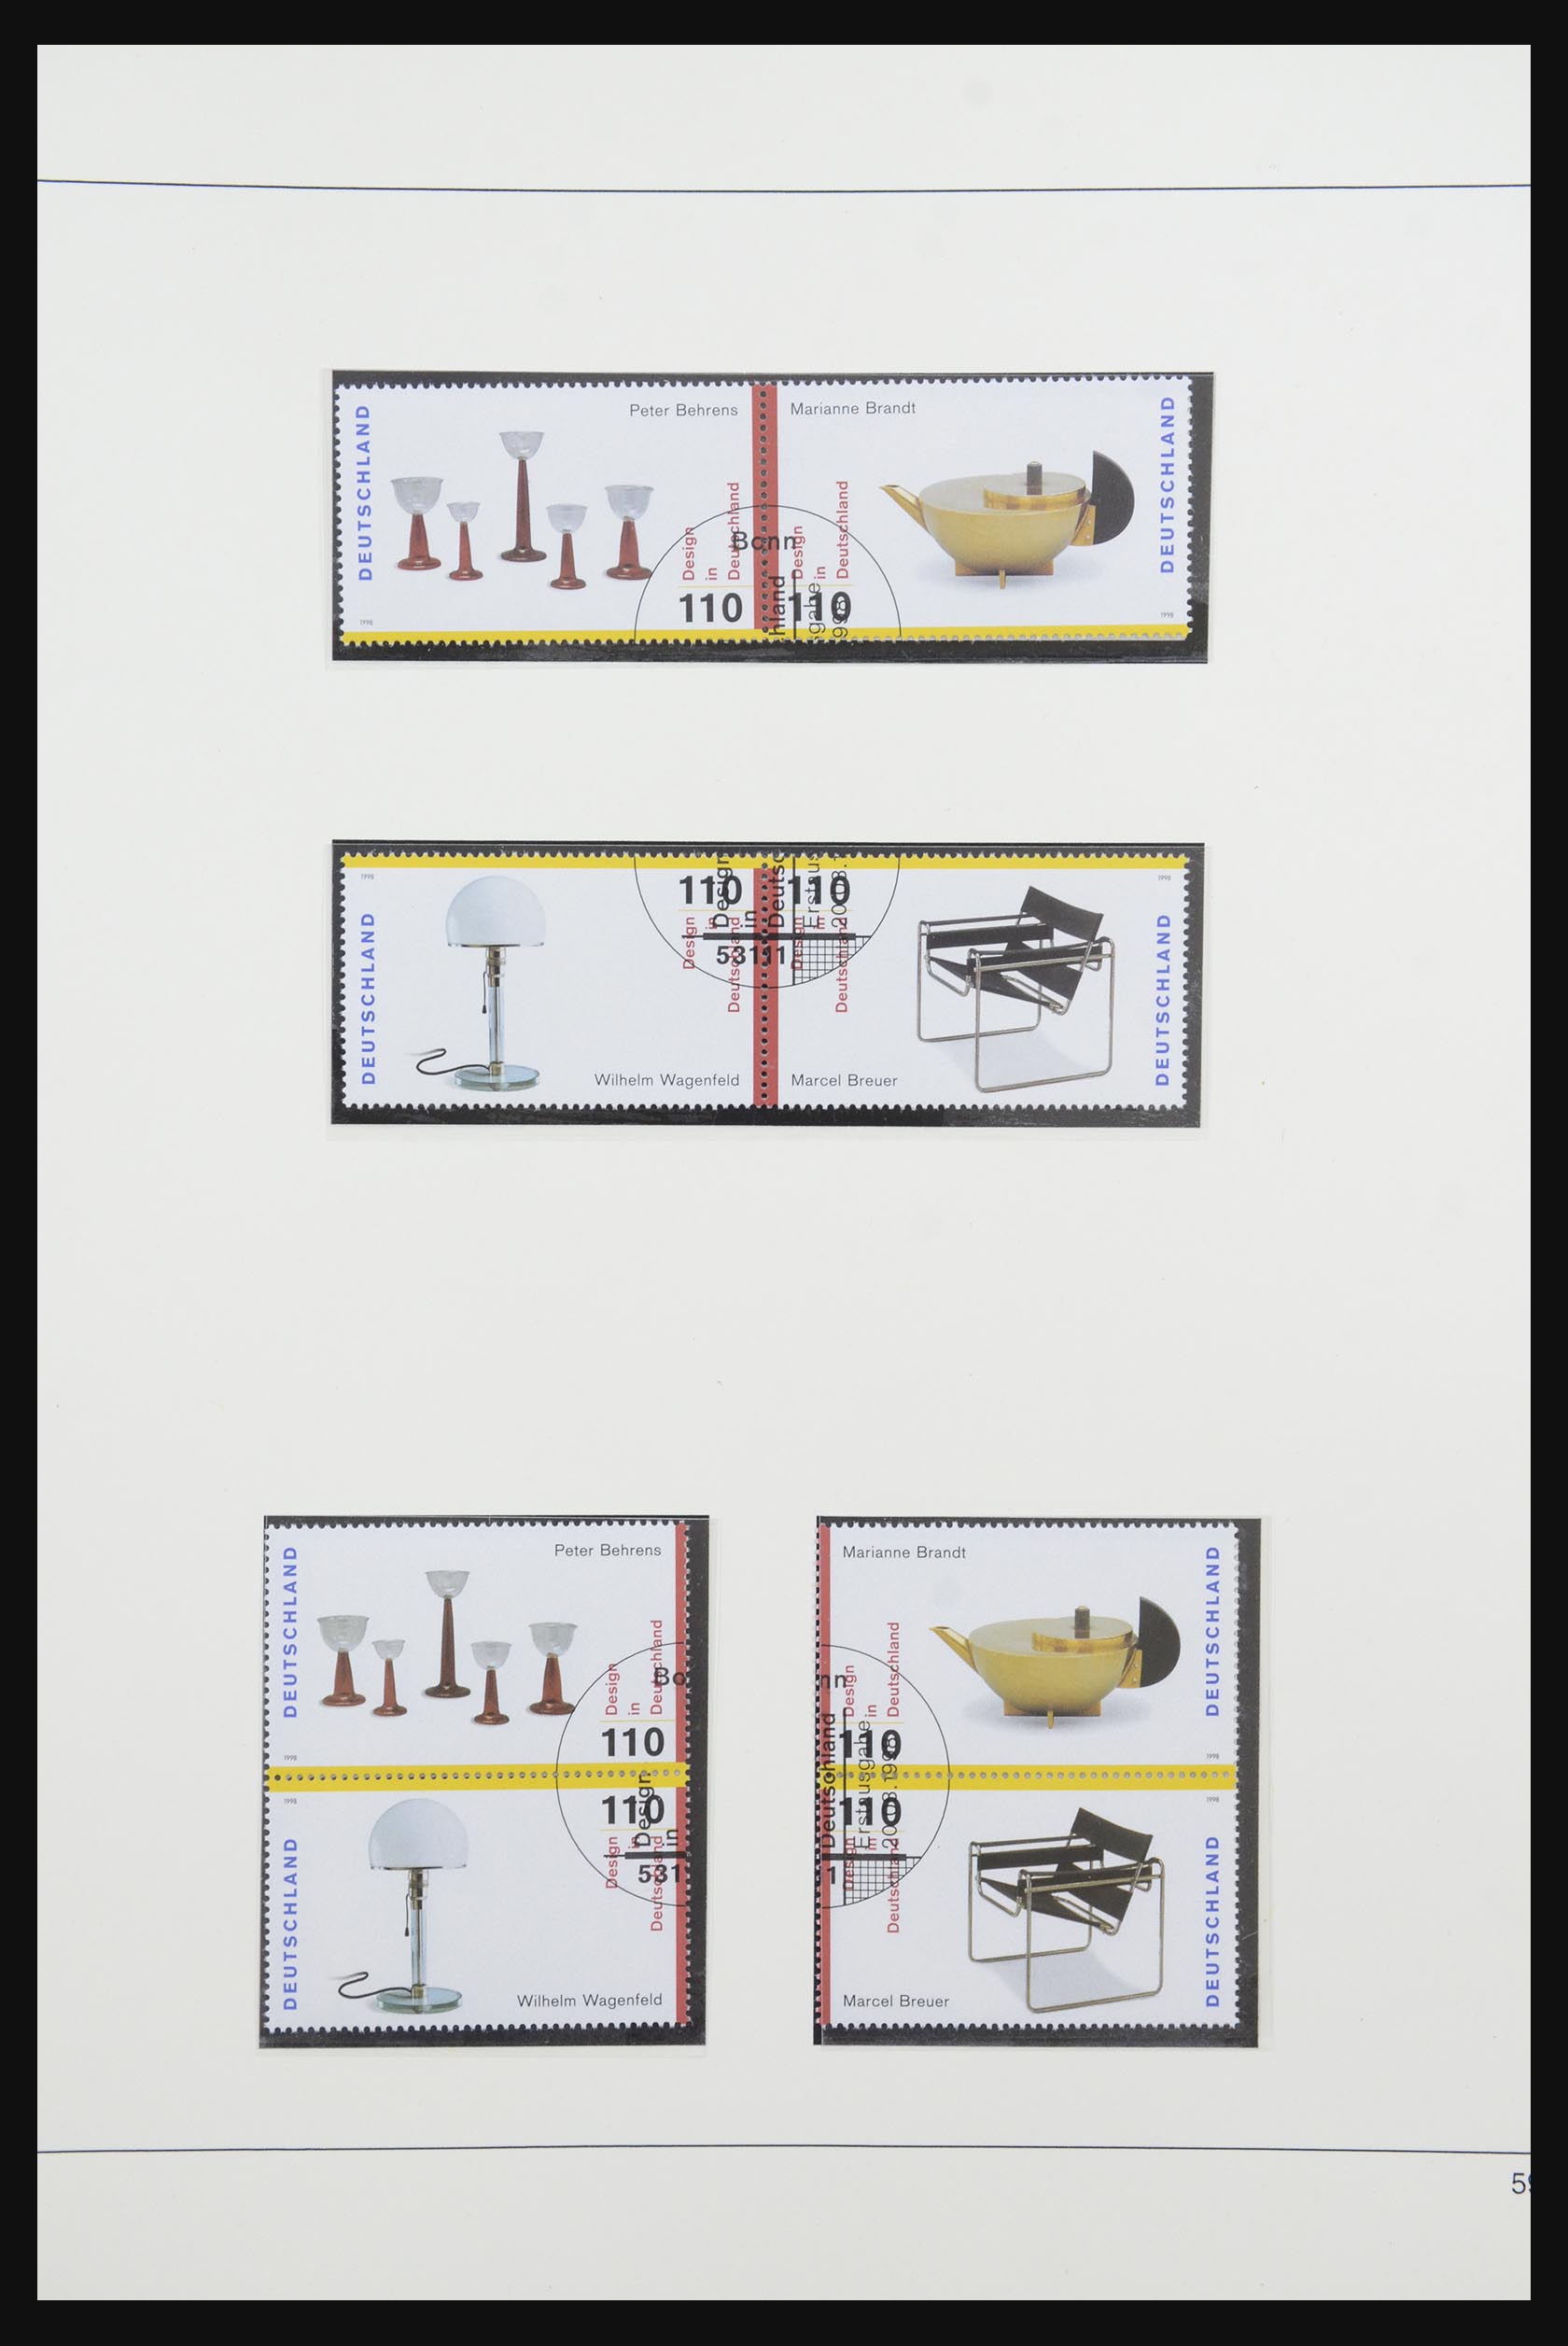 31842 082 - 31842 Bundespost combinations 1951-2003.